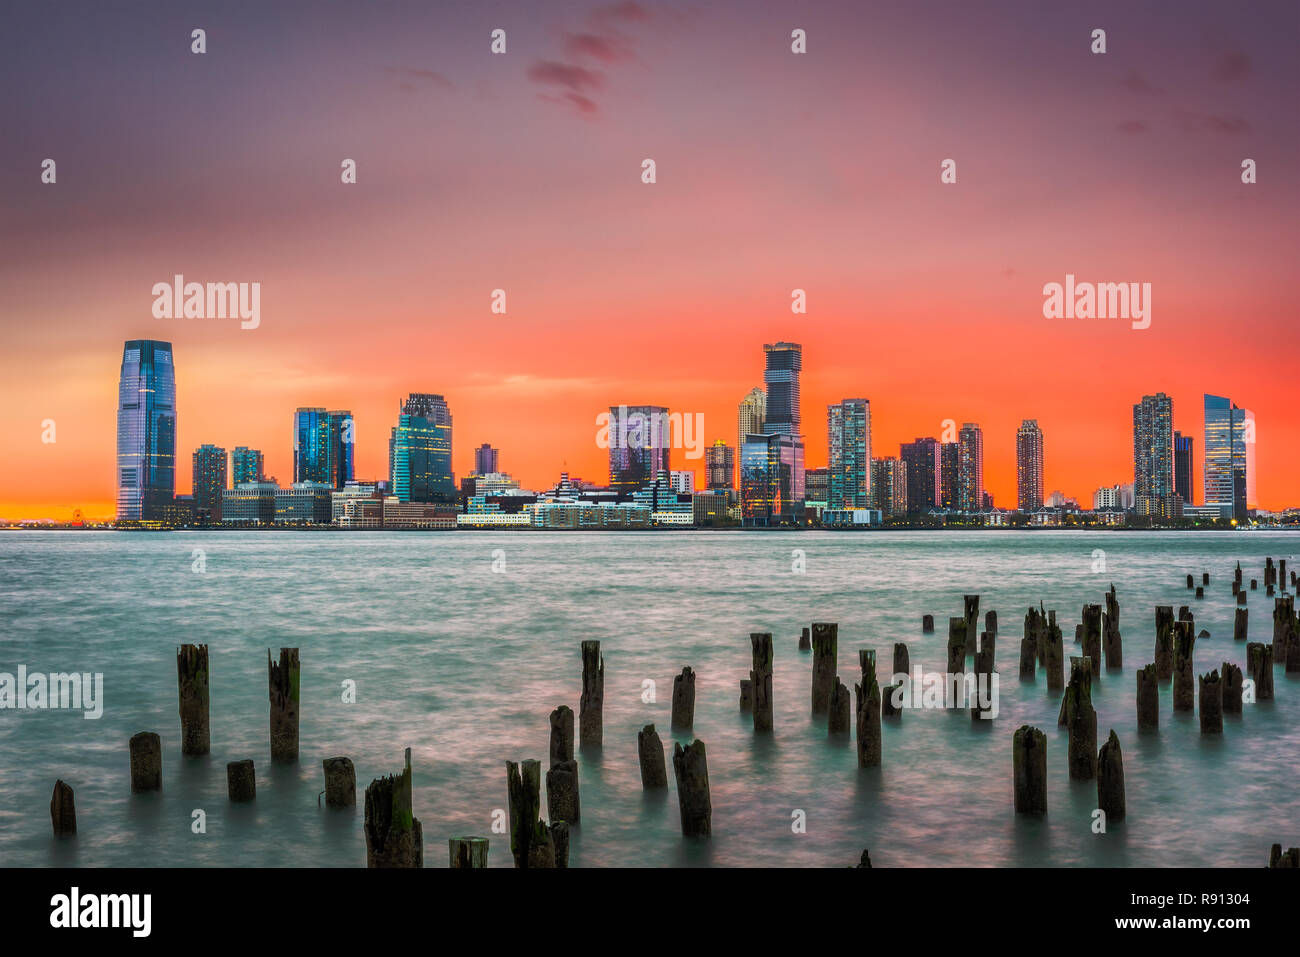 Jersey City, New Jersey, USA skyline across the Hudson River after sunset. Stock Photo